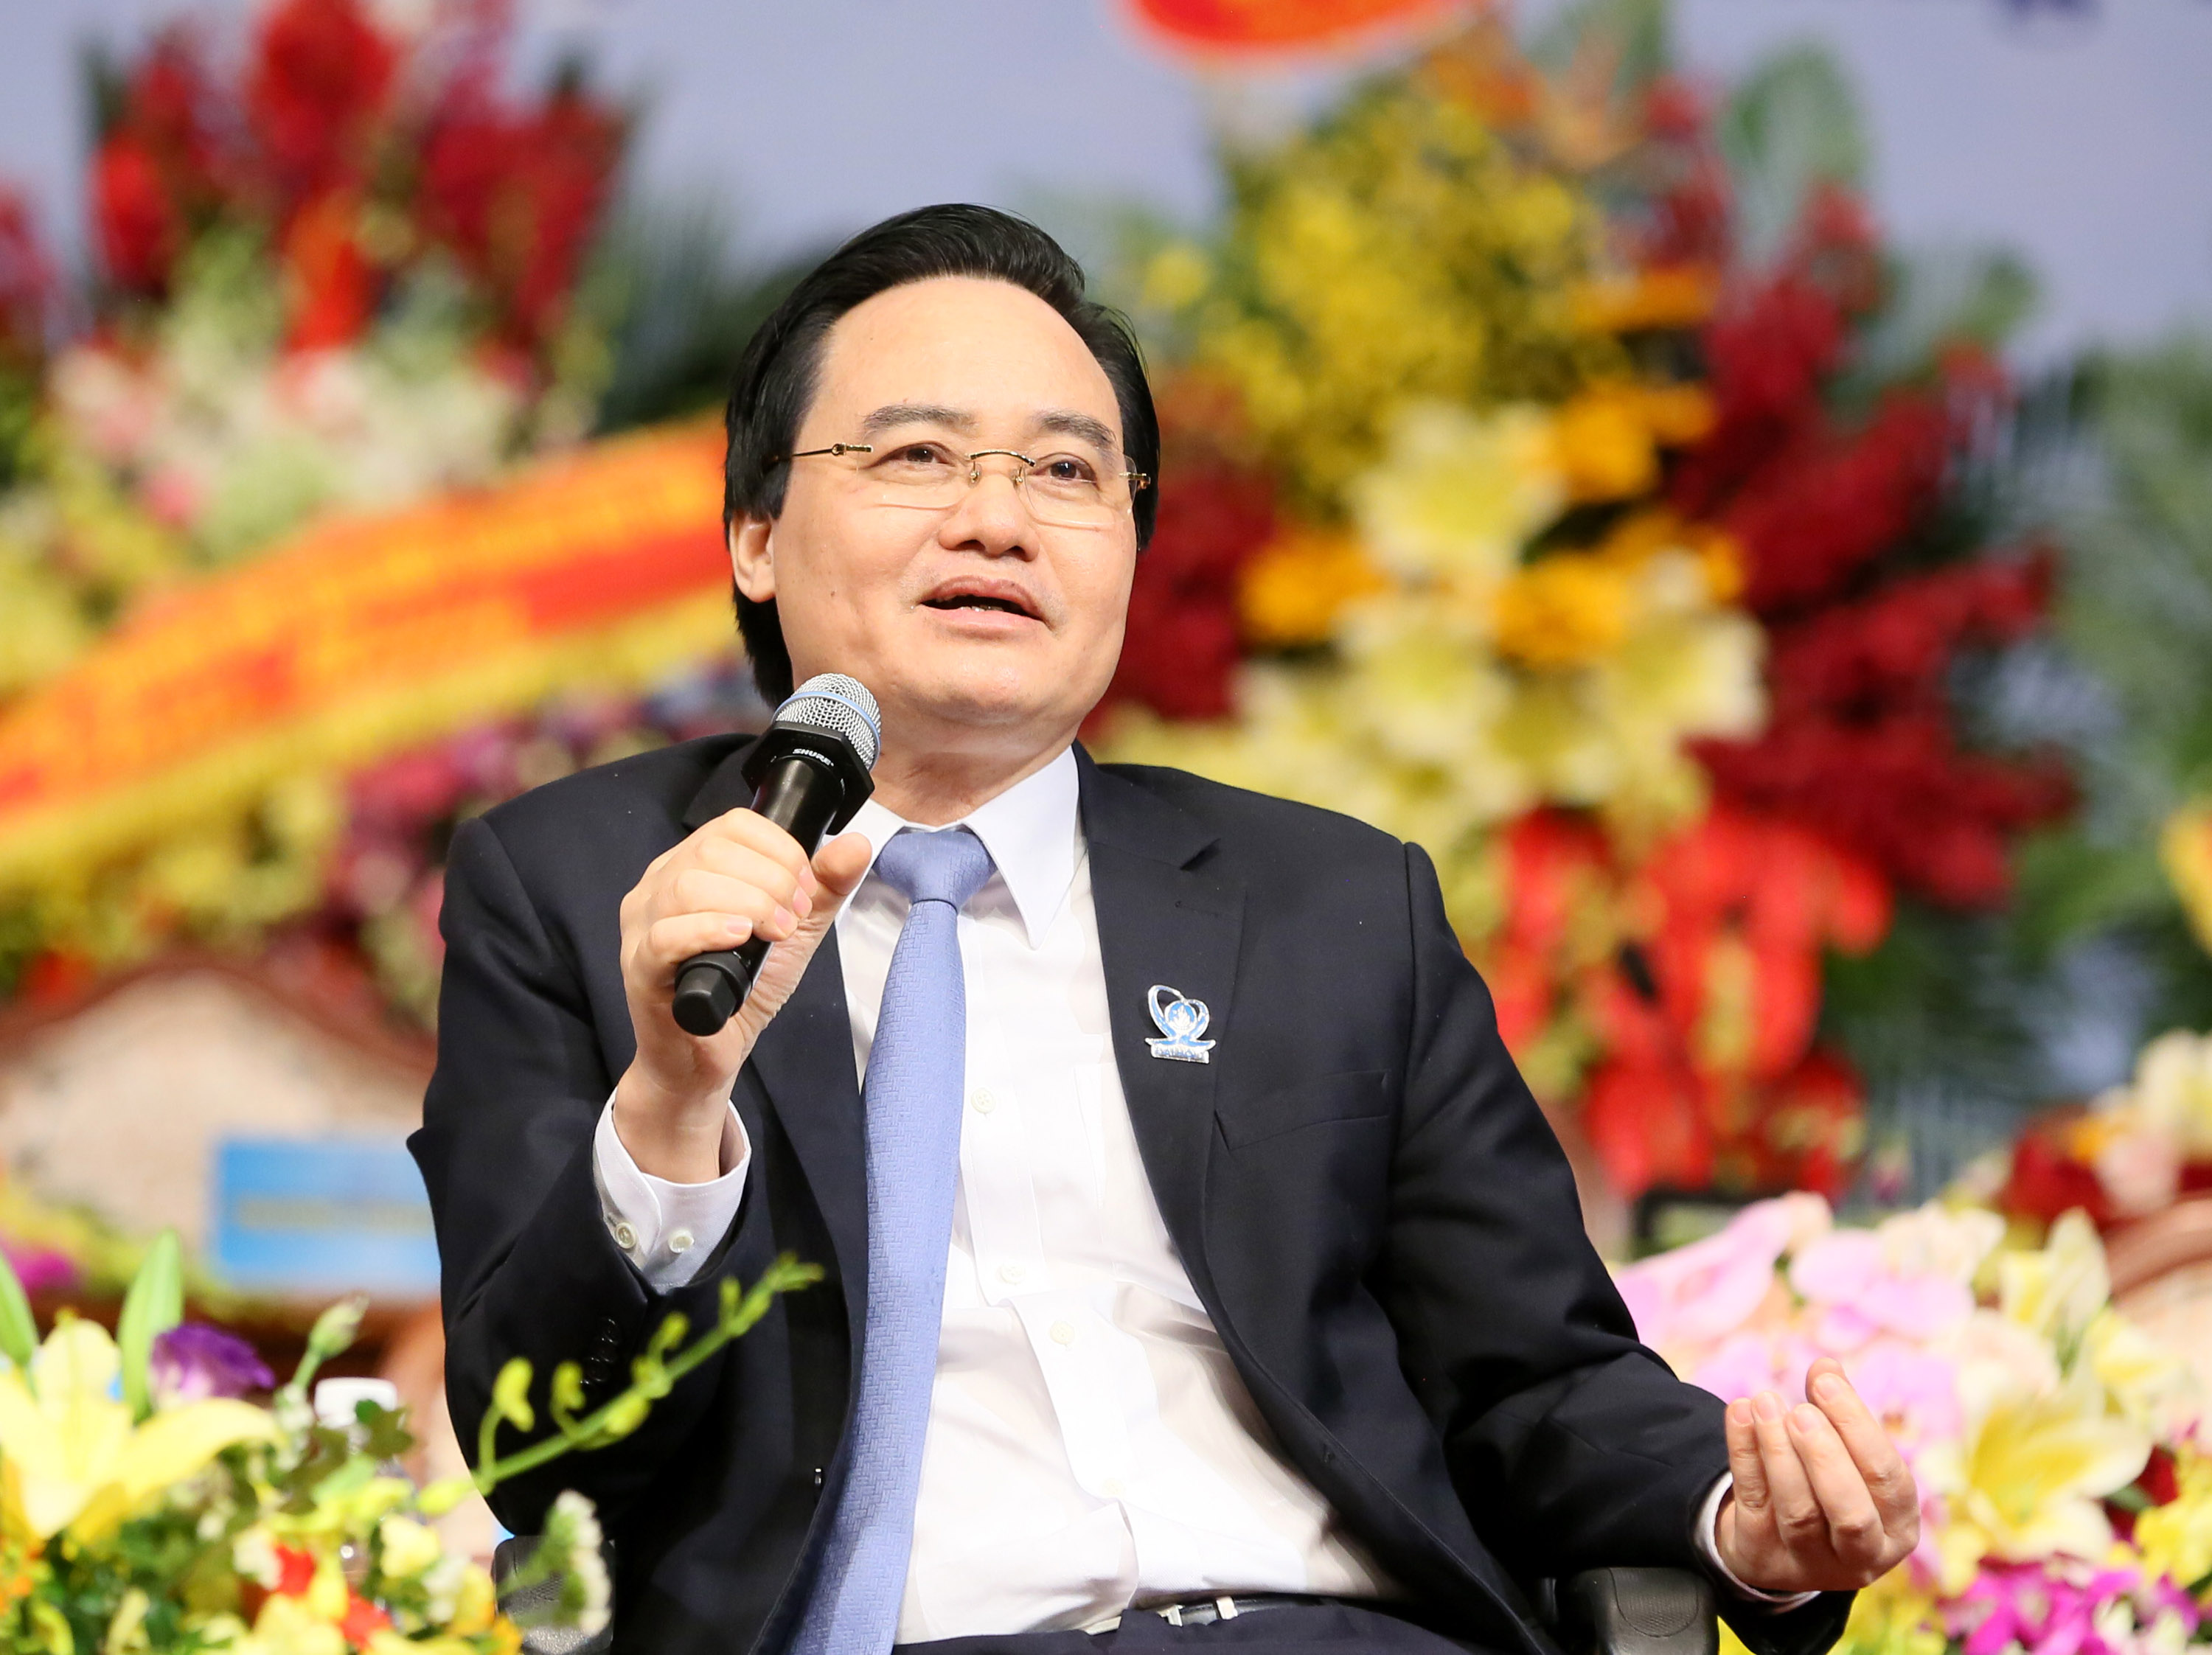 Bộ trưởng Bộ GD&ĐT Phùng Xuân Nhạ cùng lãnh đạo một số bộ, ngành đã có cuộc đối thoại với các đại biểu tham dự Đại hội đại biểu toàn quốc Hội Sinh viên Việt Nam. Ảnh: VGP